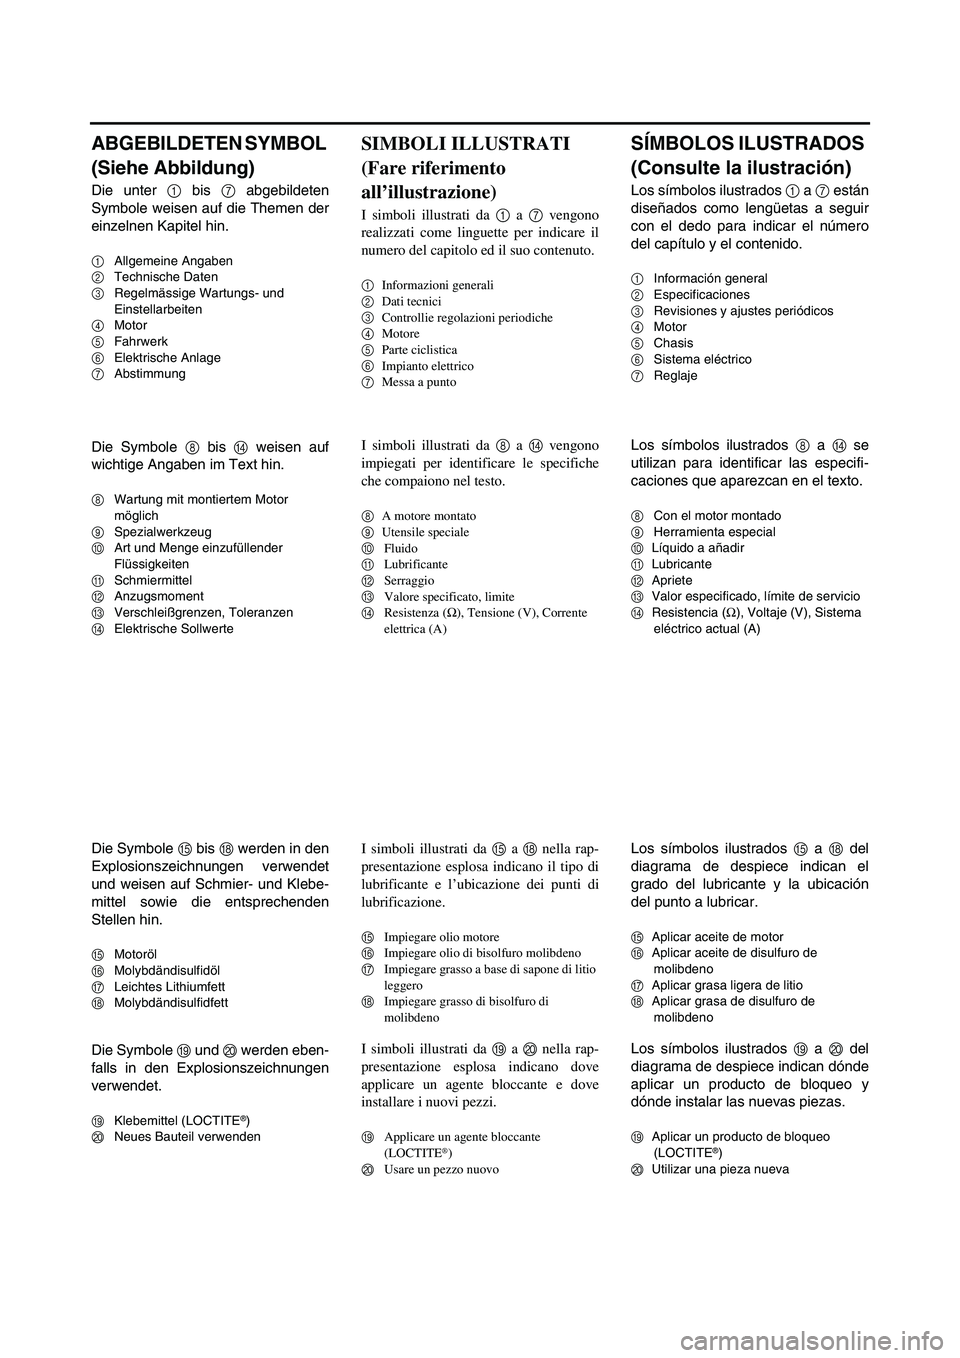 YAMAHA WR 250F 2006  Owners Manual ABGEBILDETEN SYMBOL 
(Siehe Abbildung)
Die unter 1 bis 7 abgebildeten
Symbole weisen auf die Themen der
einzelnen Kapitel hin.
1Allgemeine Angaben
2Technische Daten
3Regelmässige Wartungs- und 
Einst